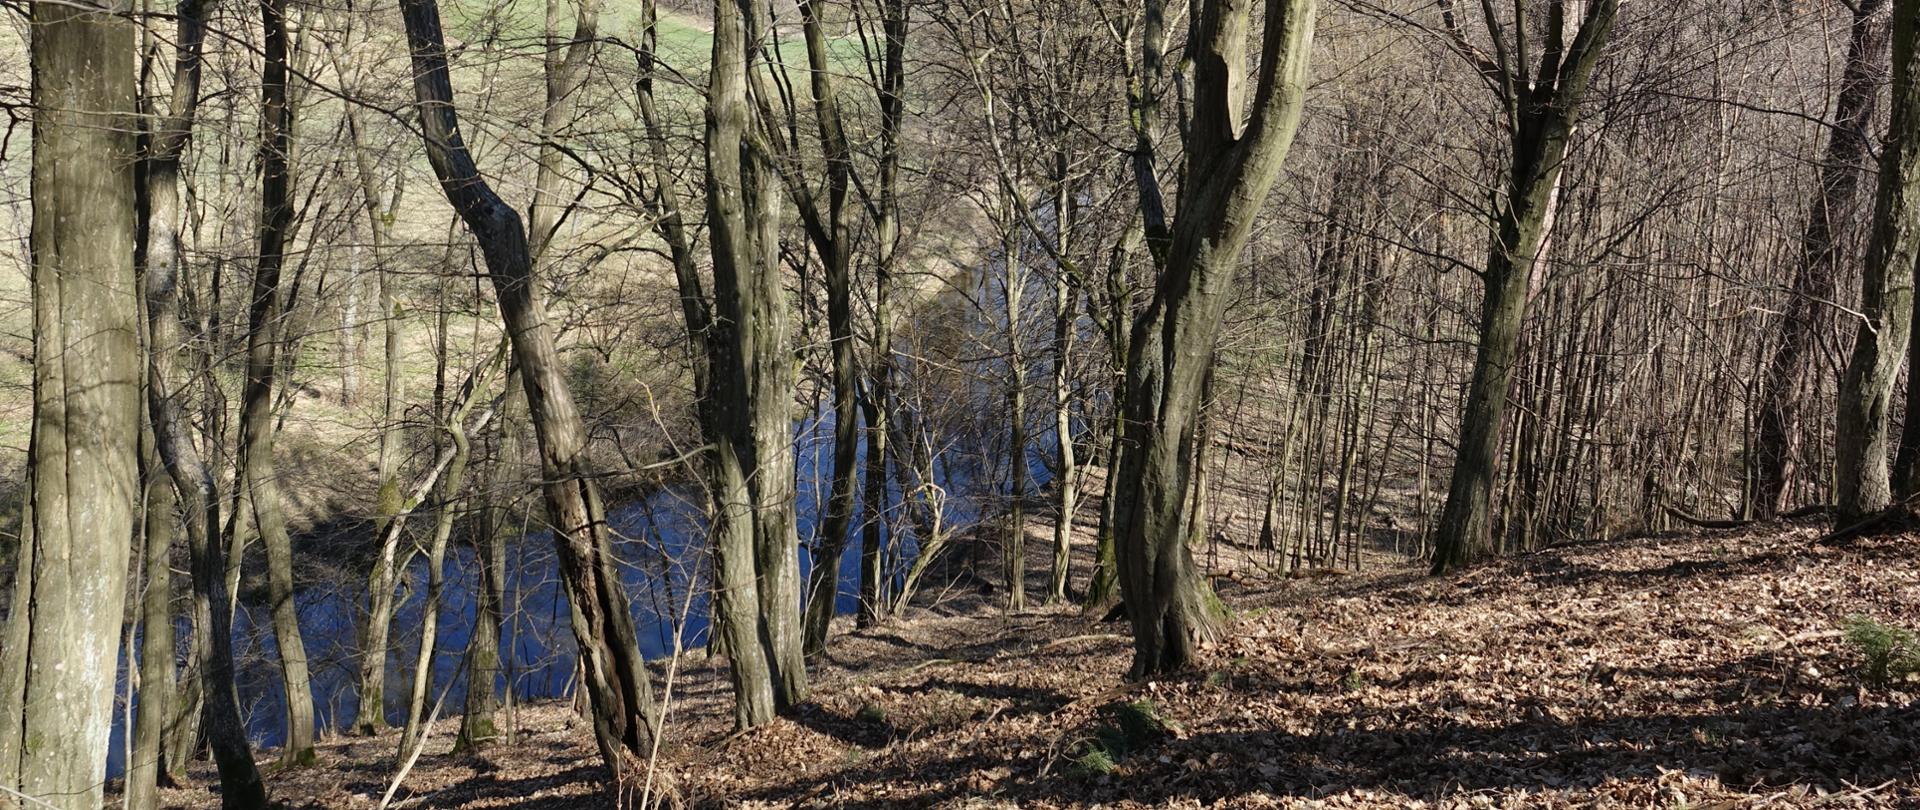 Na pierwszym planie skarpa i drzewa we wczesnowiosennej odsłonie, w dole fragment rzeki i łąka